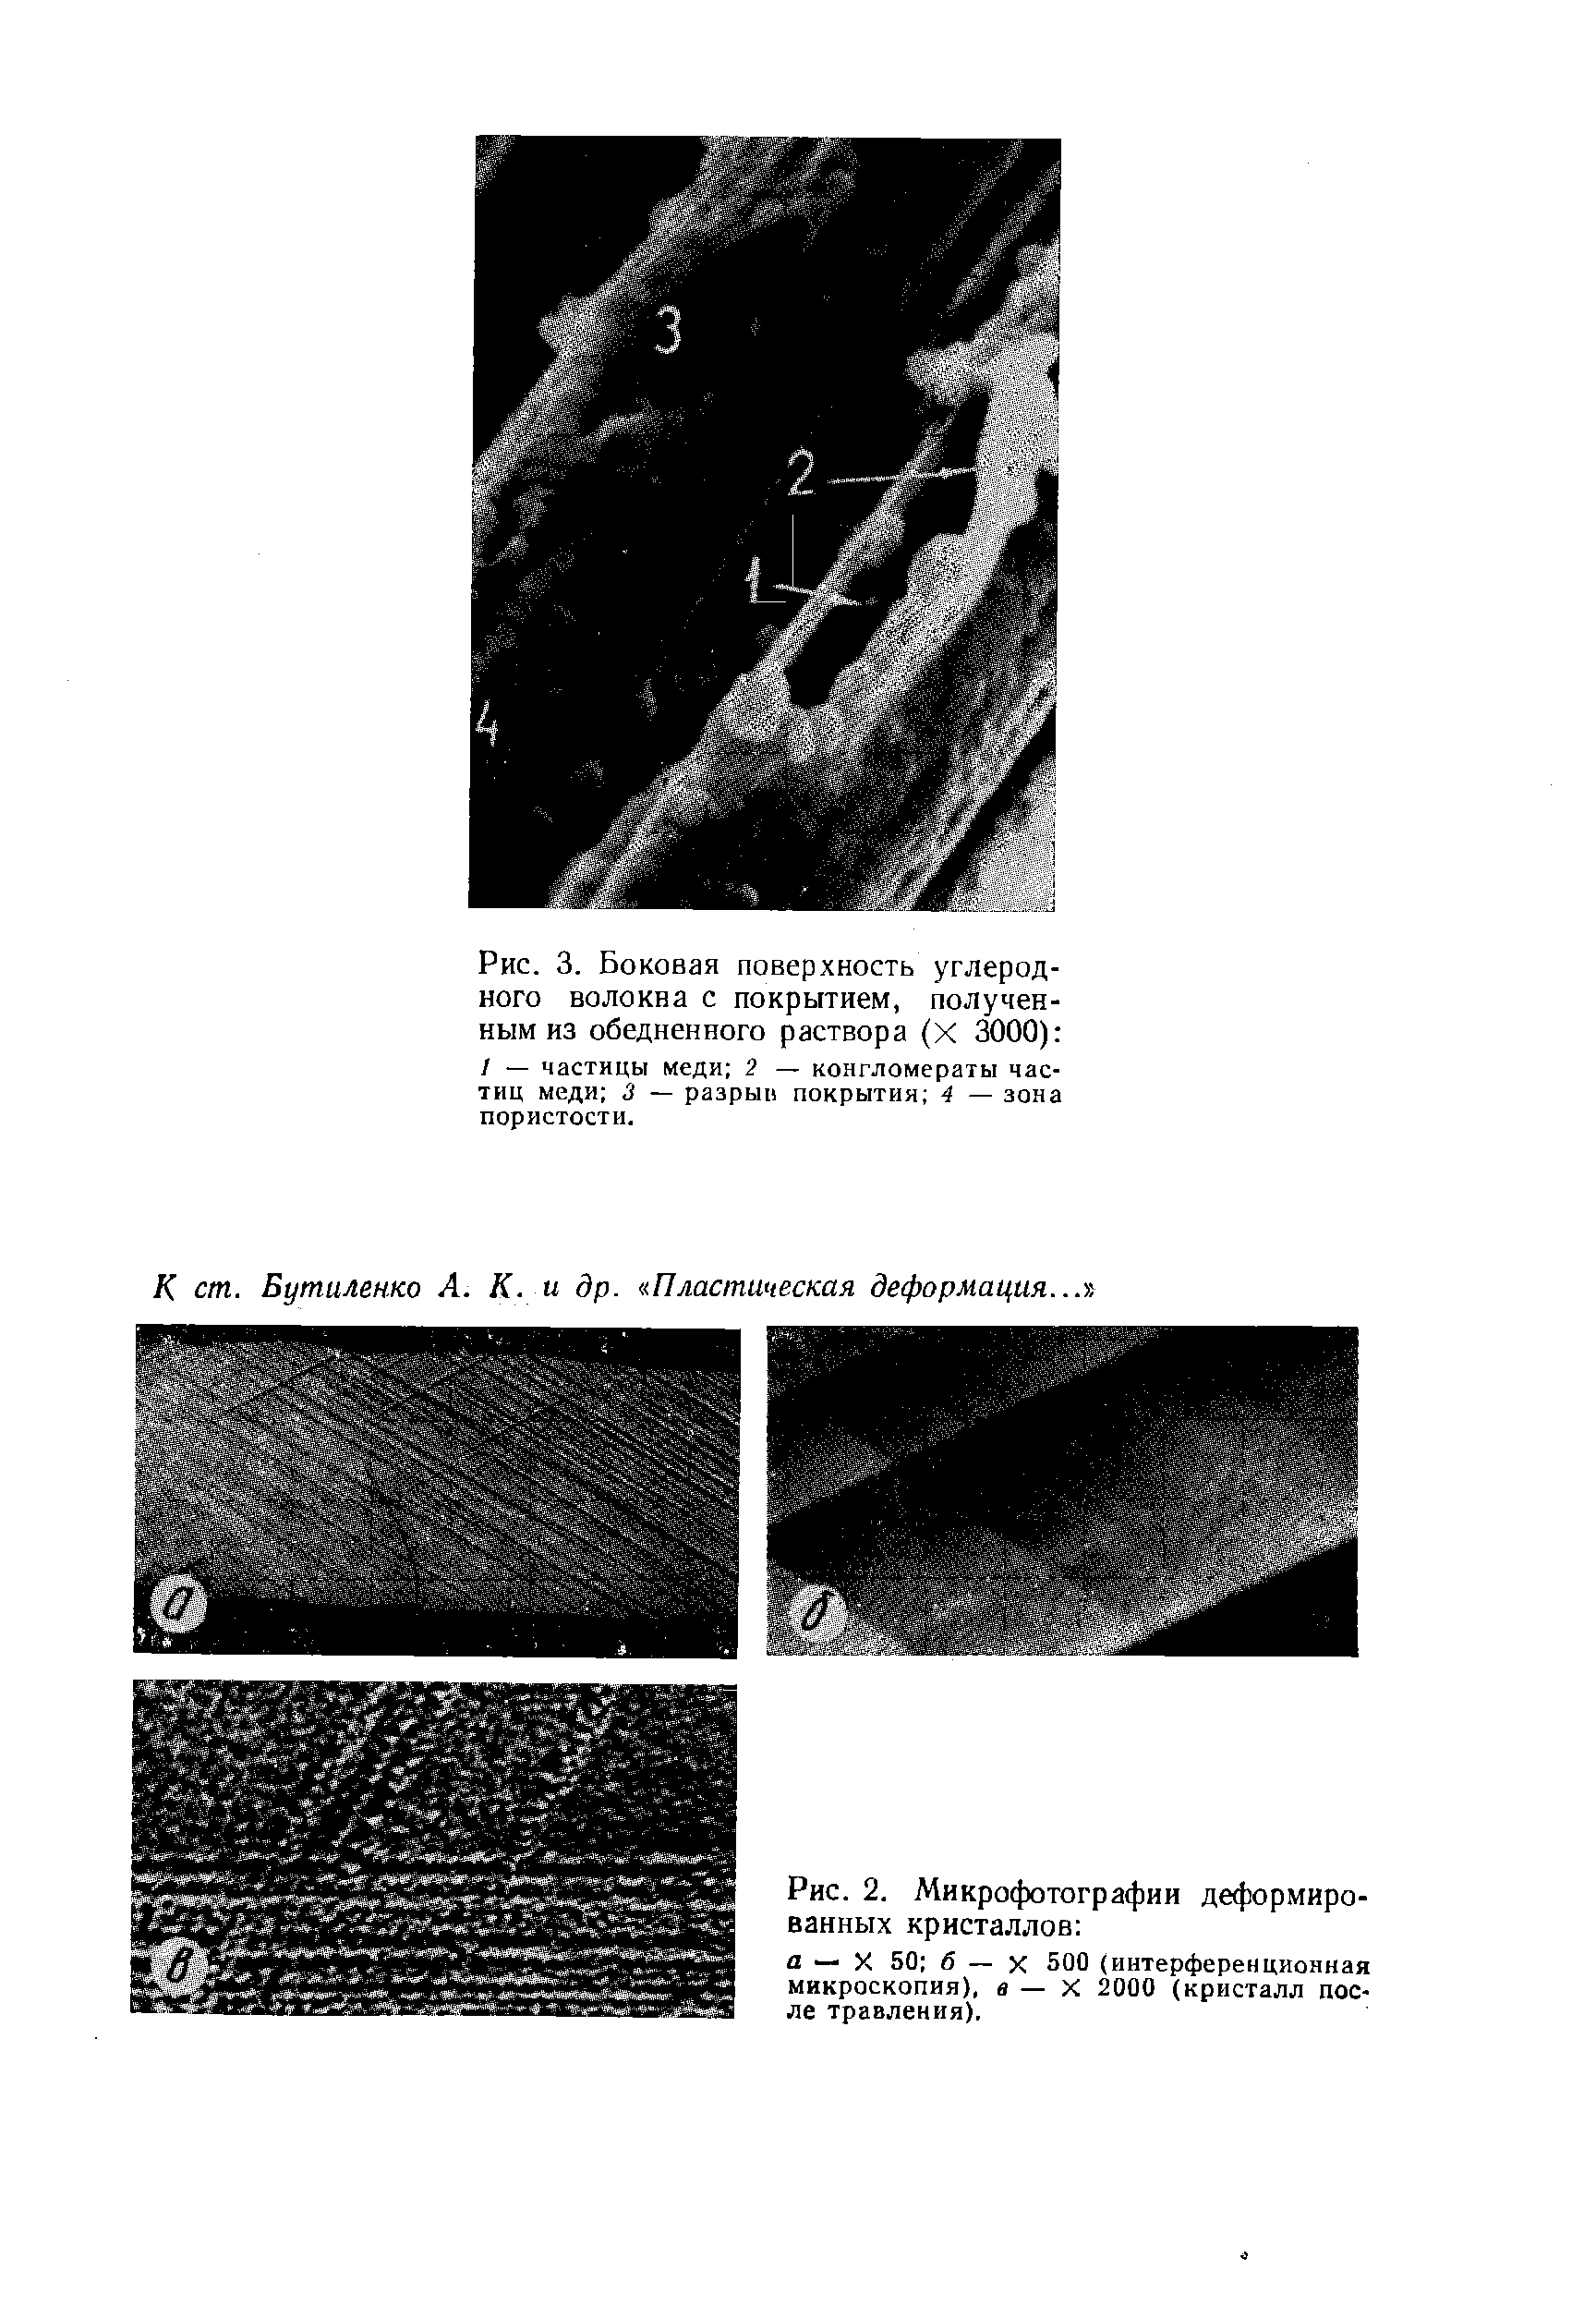 Рис. 2. Микрофотографии деформированных кристаллов а — X 50 б — X 500(интерференционная микроскопия), в — X 2000 (кристалл после травления).
